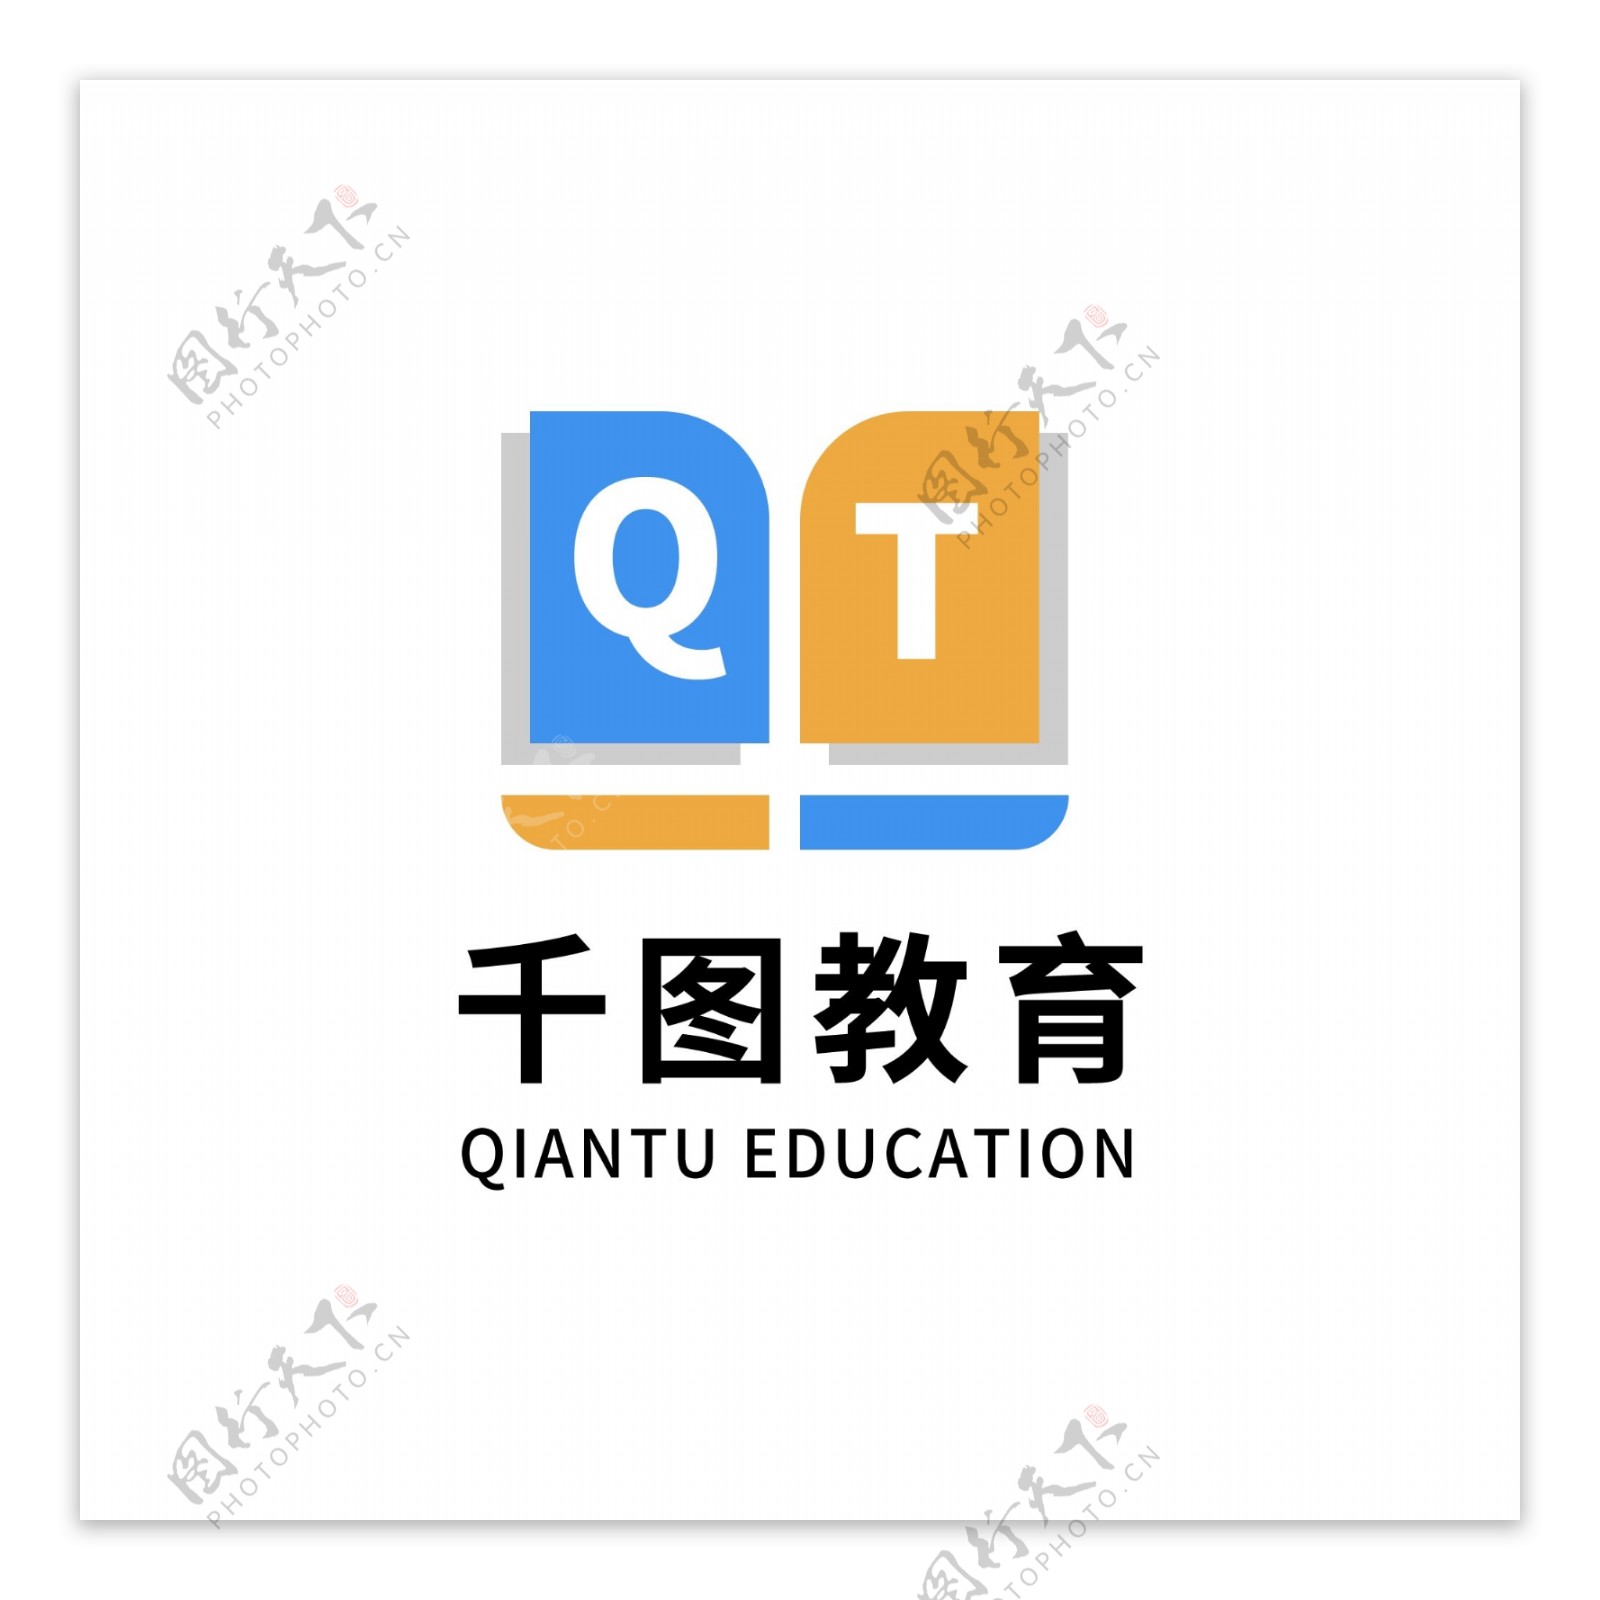 教育培训机构logo